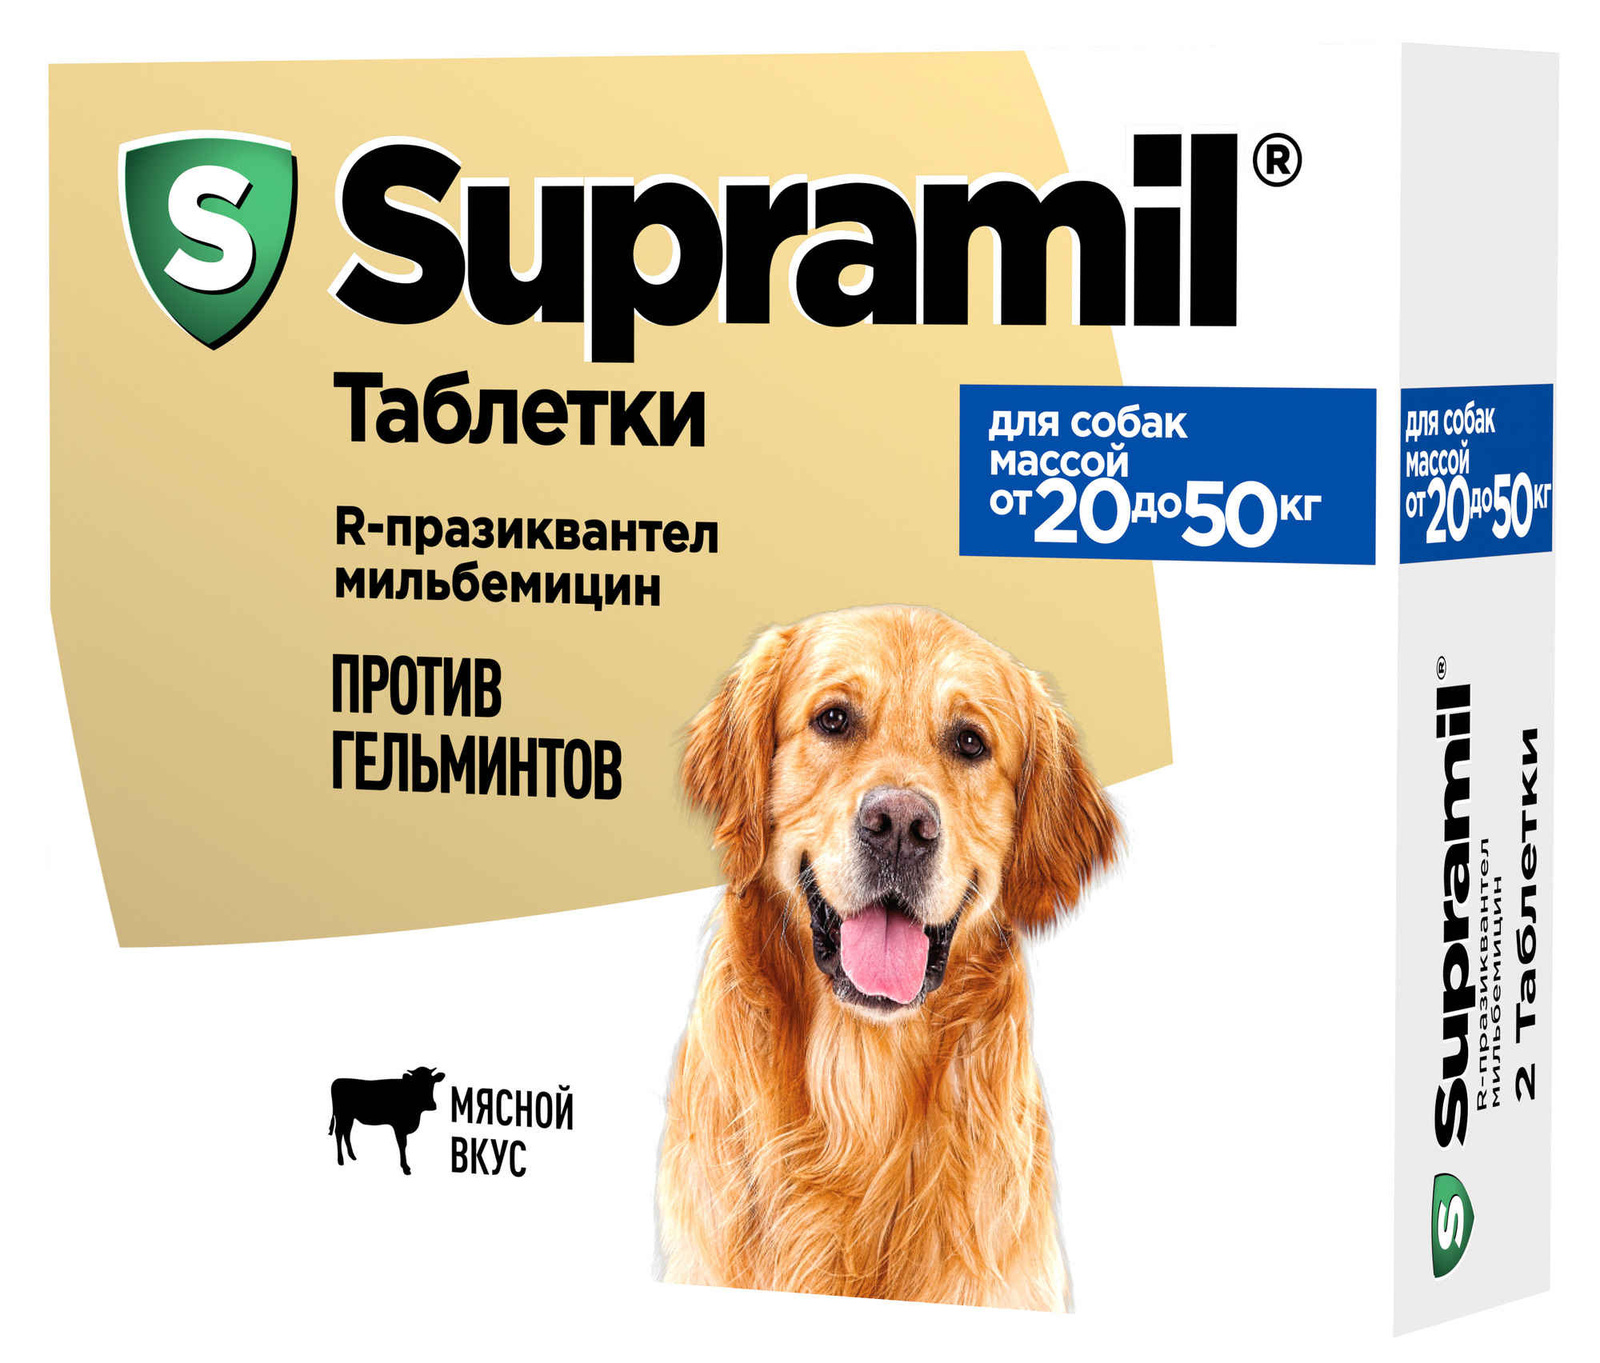 Астрафарм Астрафарм антигельминтный препарат Supramil для щенков и собак массой от 20 до 50 кг, таблетки (20 г)